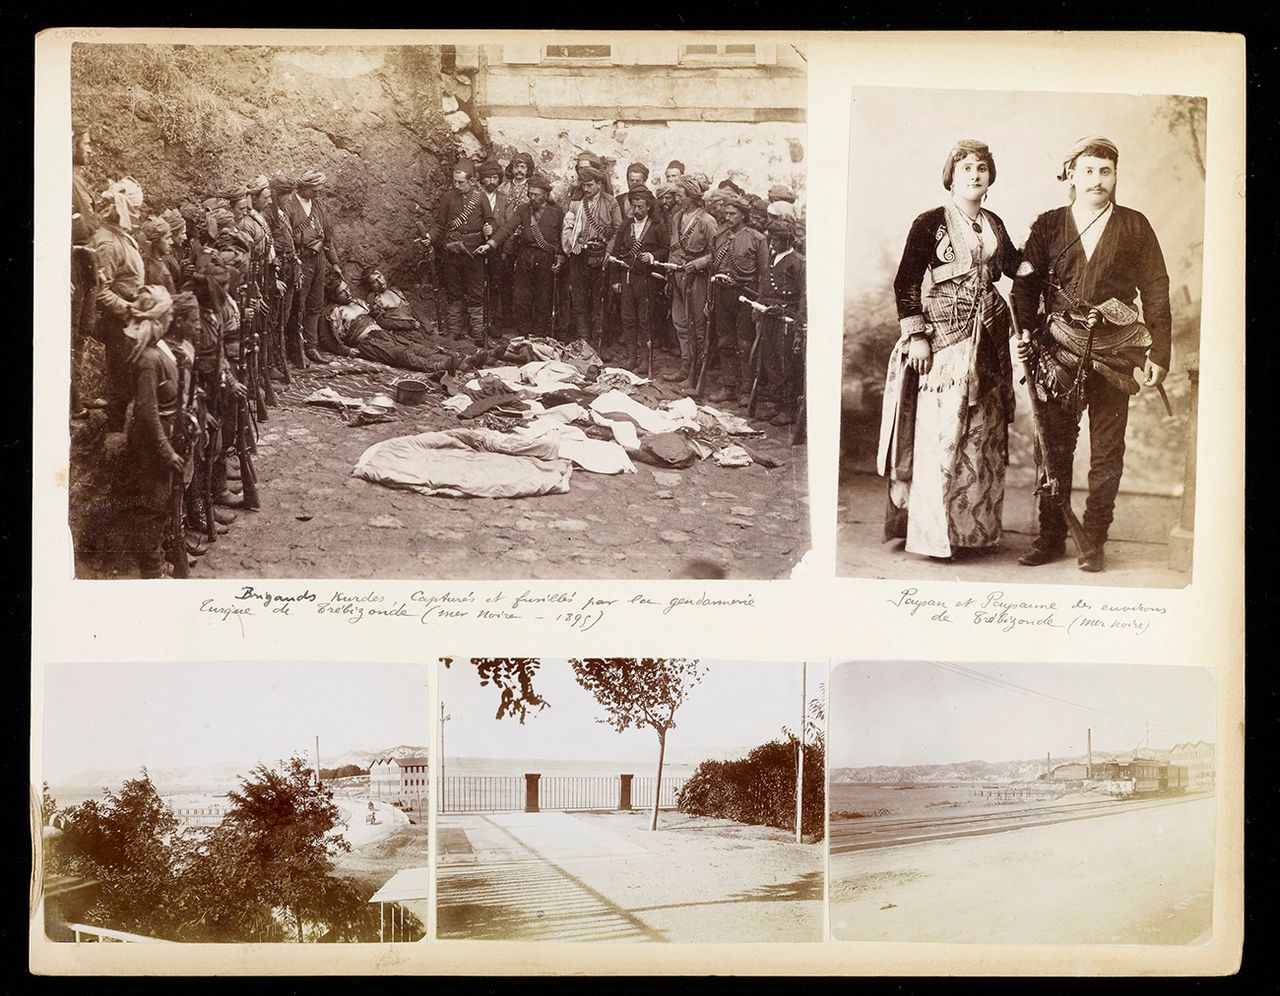 Δεξιόστροφα από πάνω αριστερά: Κούρδοι ληστές που συνελήφθησαν και εκτελέστηκαν από την τουρκική χωροφυλακή, Τραπεζούντα, Ζευγάρι Ποντίων από την Τραπεζούντα. Λιμάνι με τρόλεϊ, 1885–95, άγνωστος φωτογράφος.